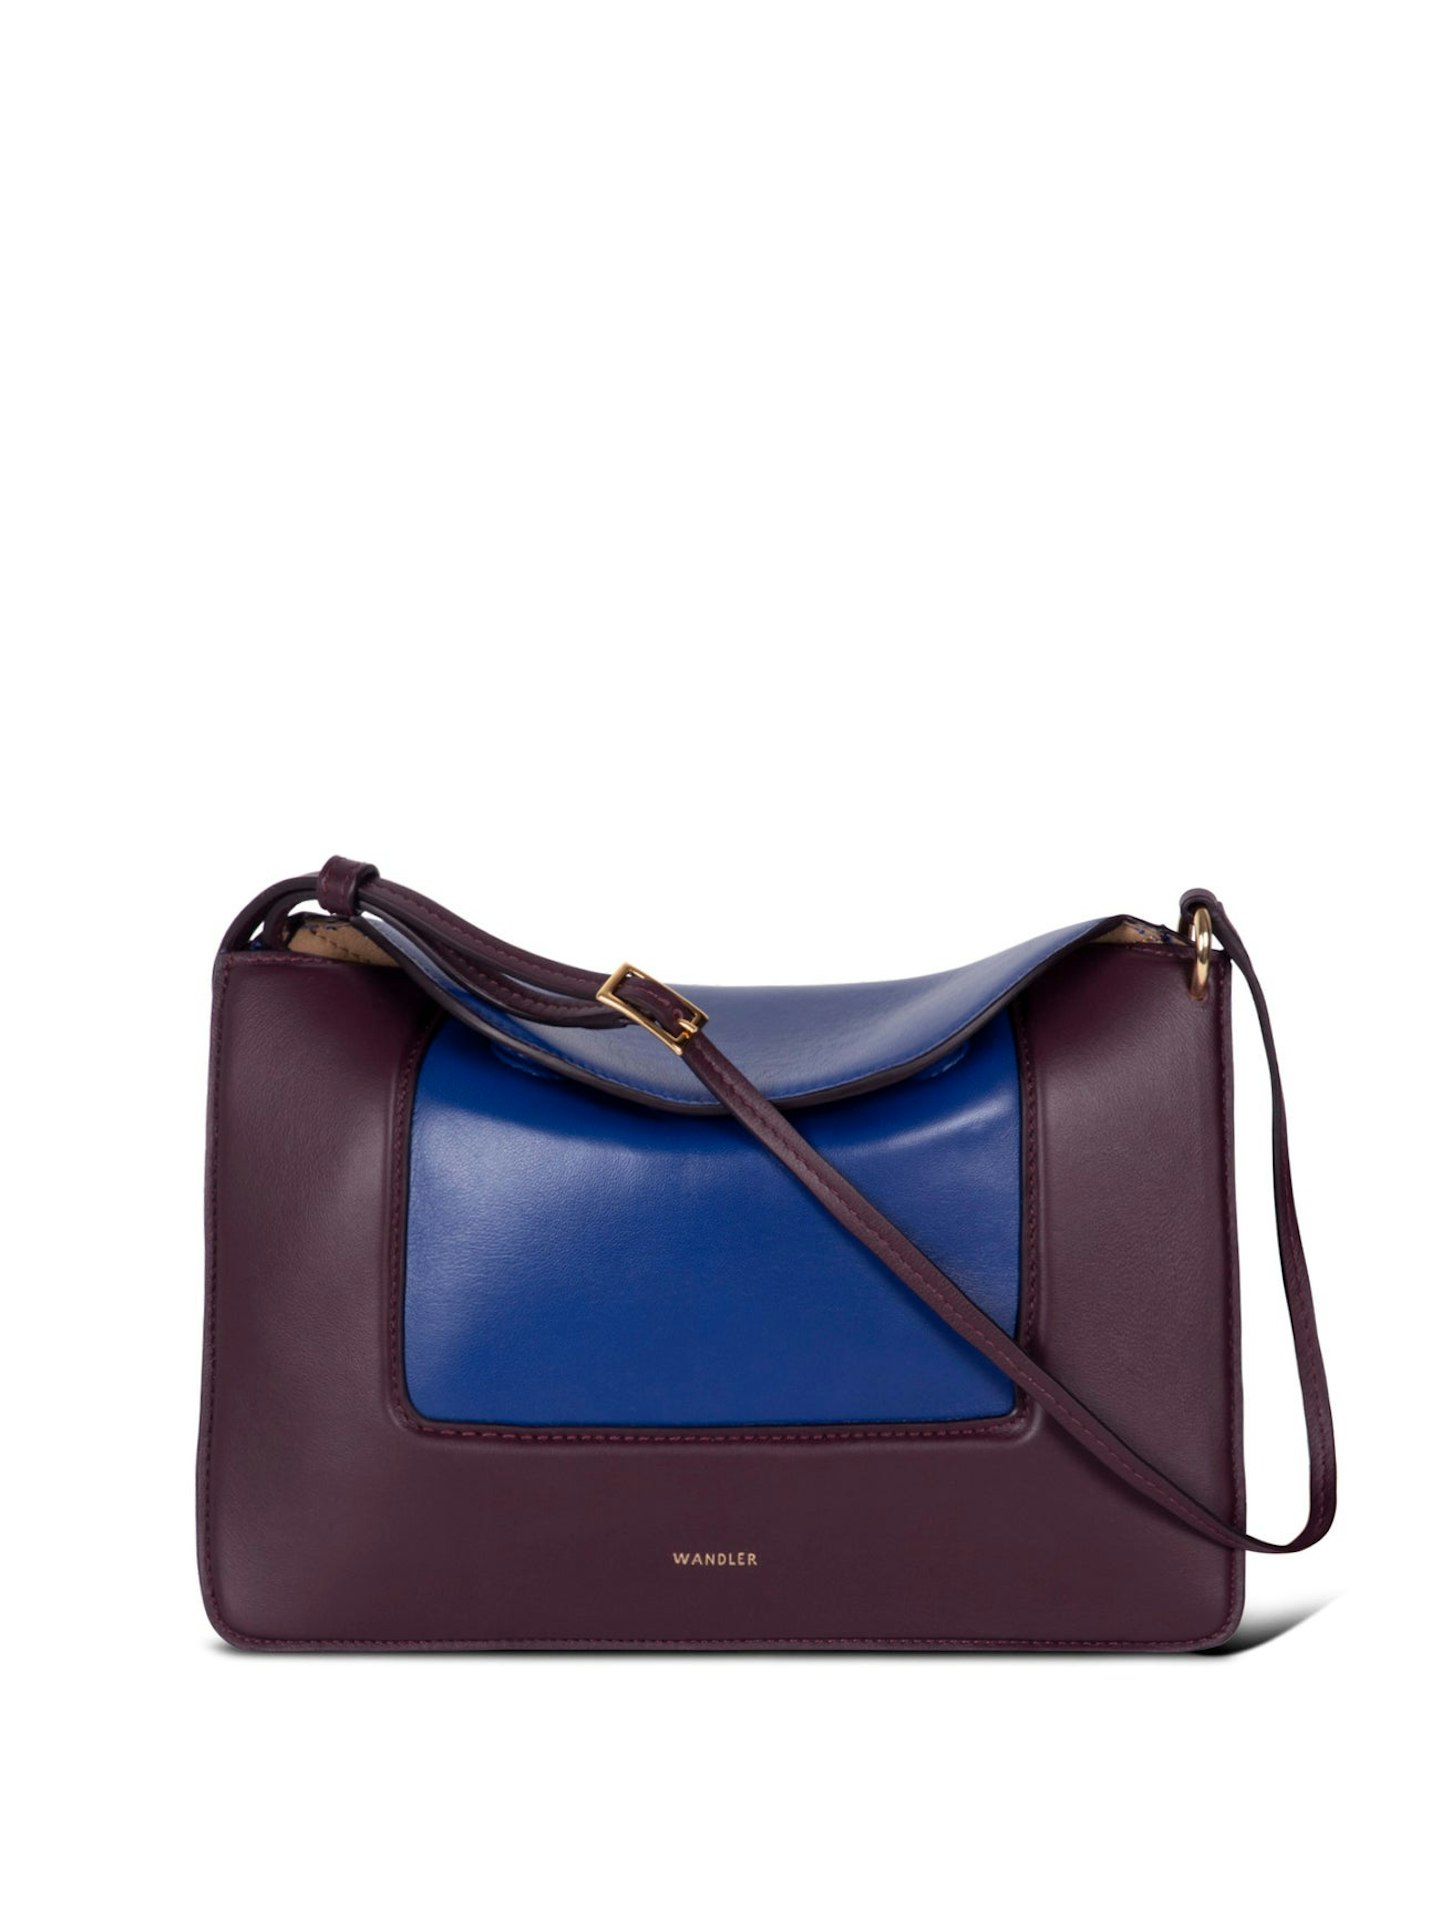 Wandler, Penelope Leather Shoulder Bag, £570